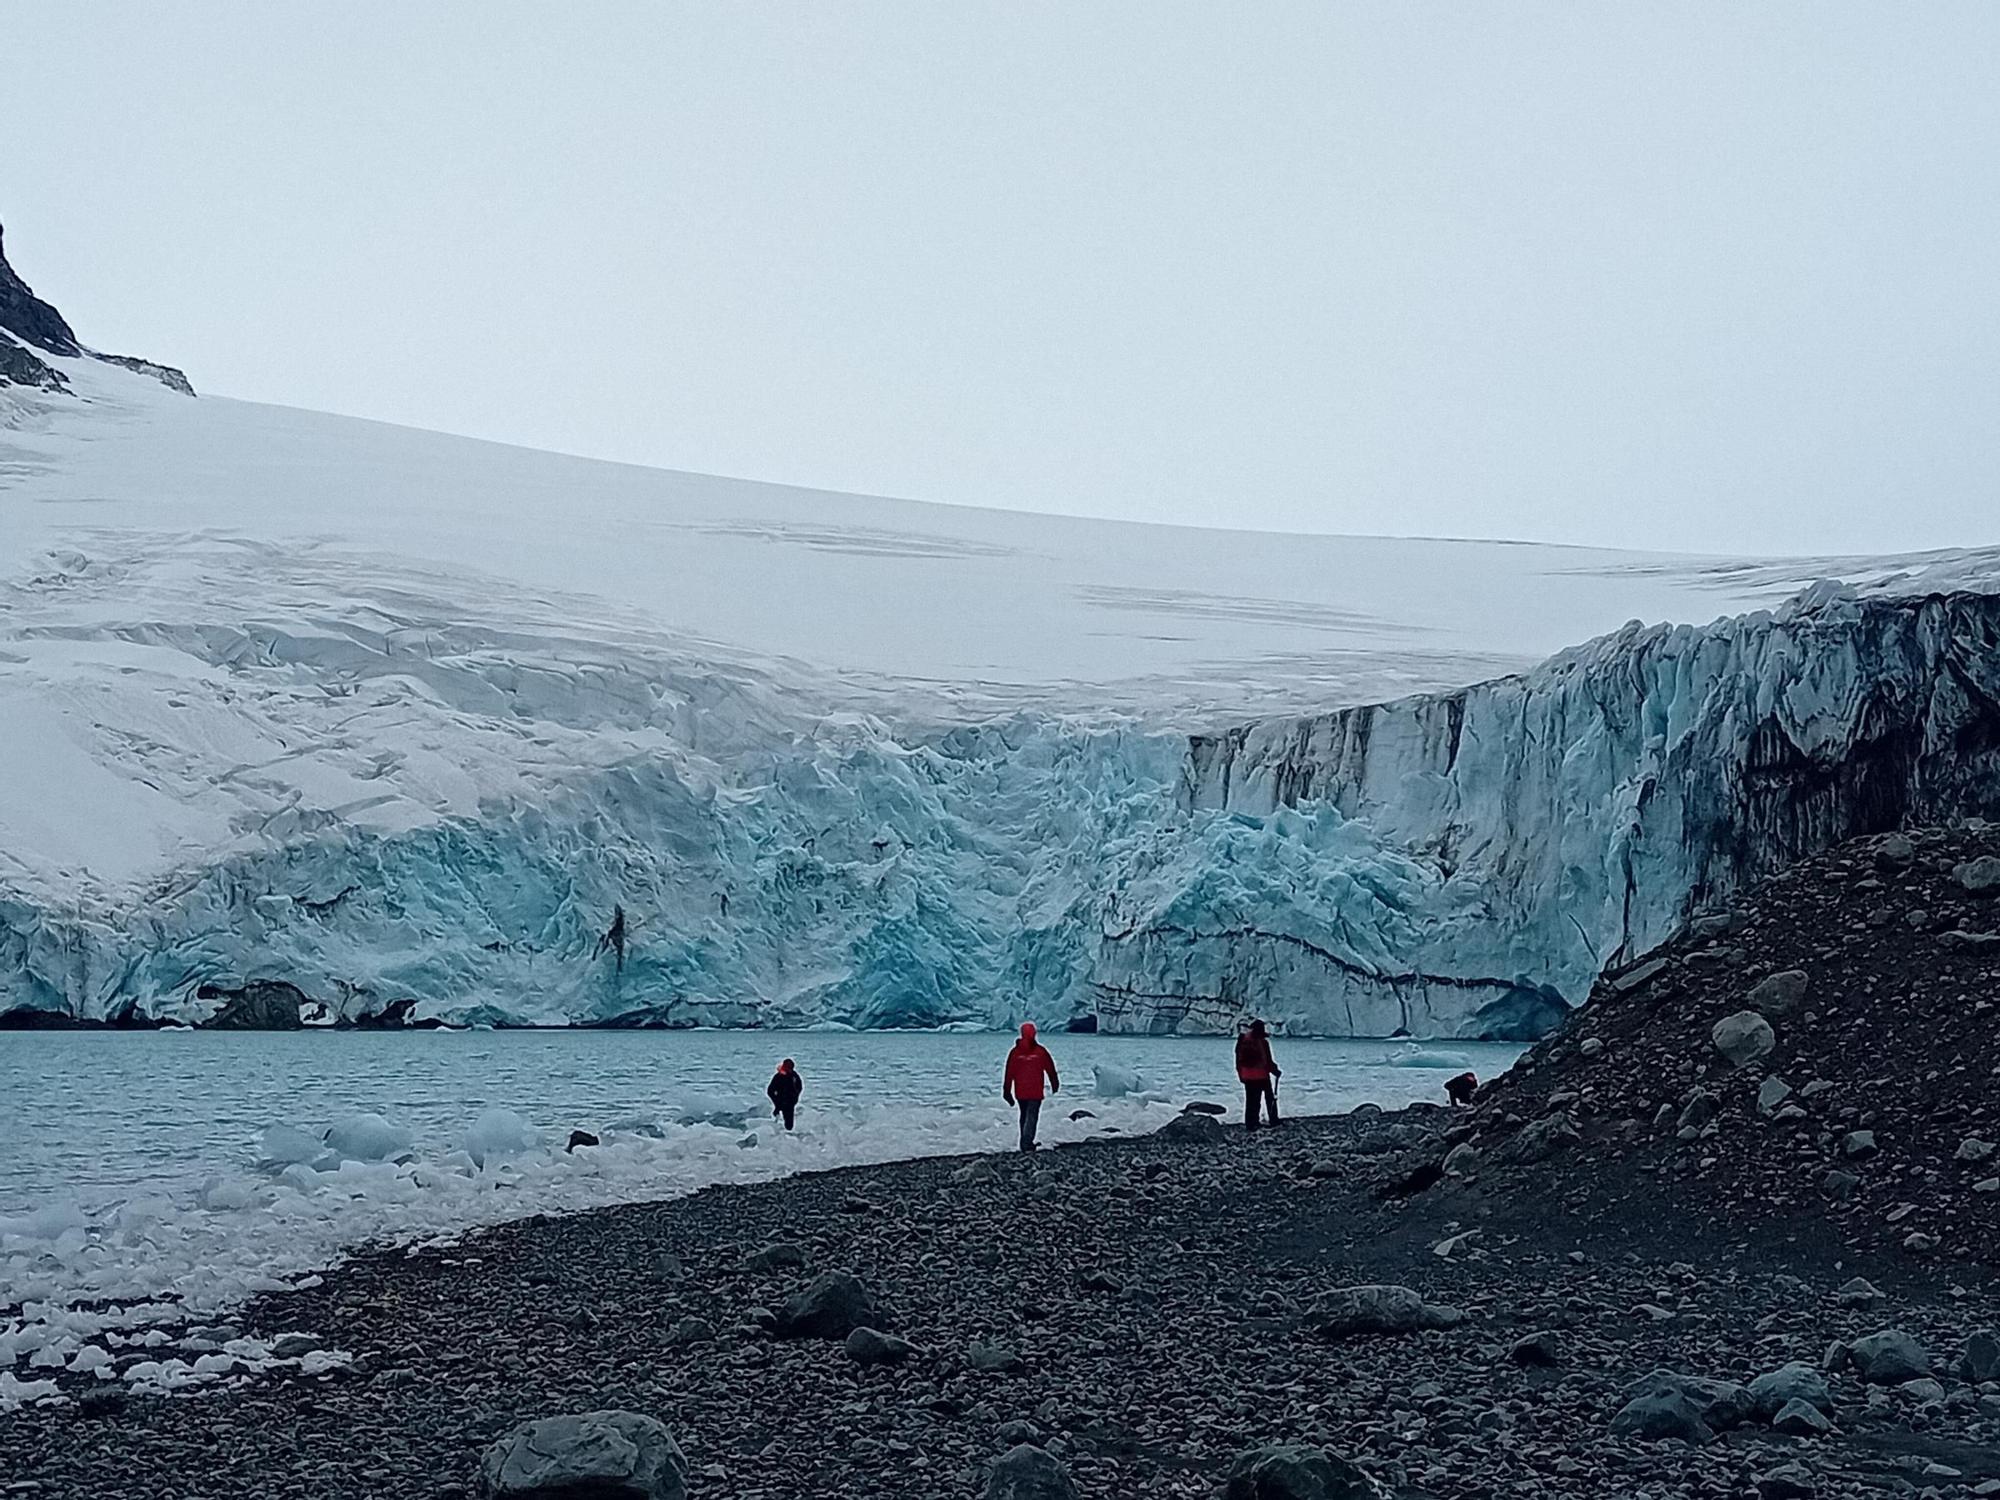 Una investigadora del IIM-CSIC participa en una campaña antártica del proyecto Dichoso